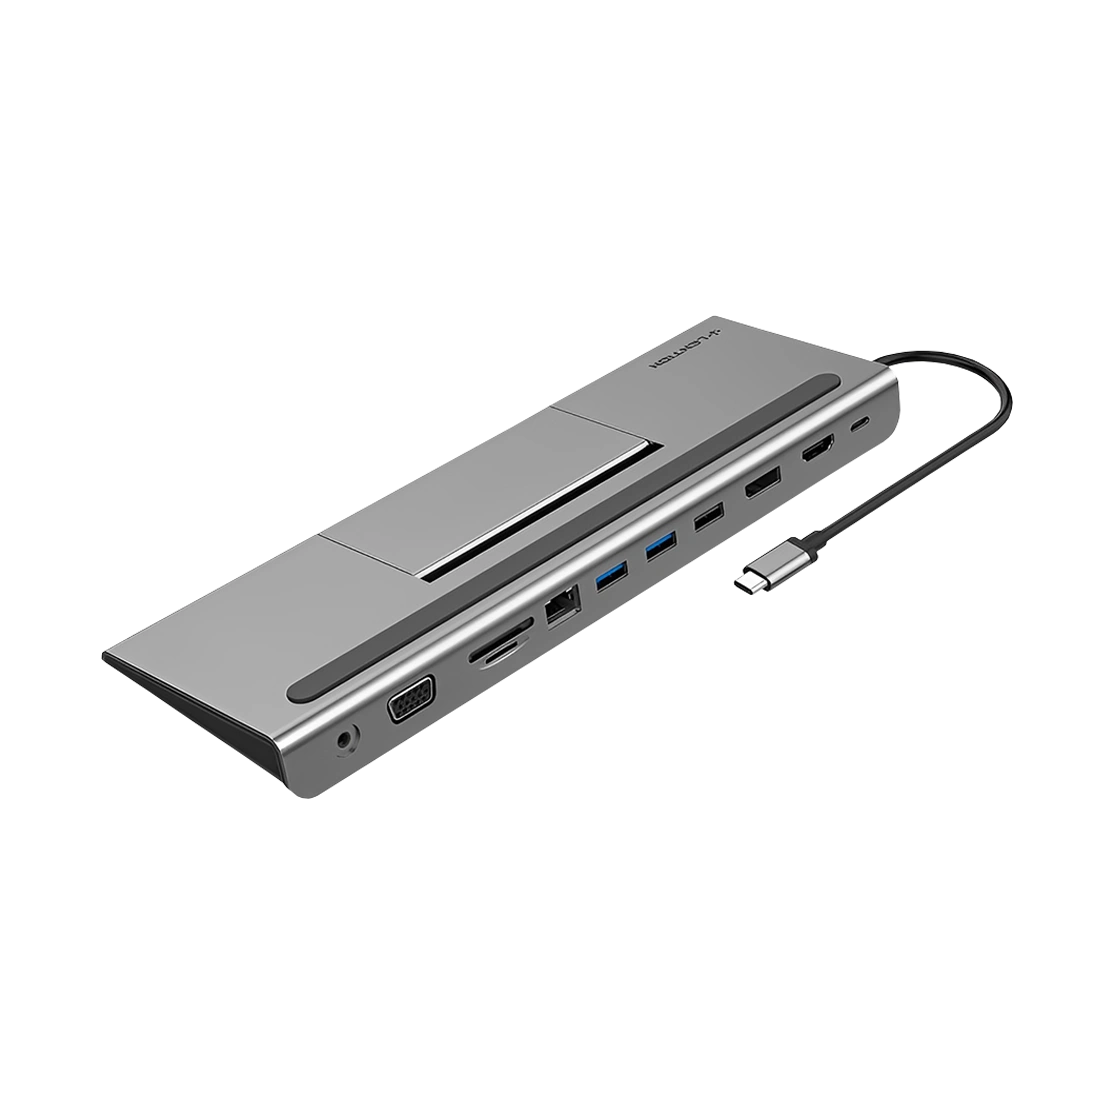 داک استیشن USB-C لنشن مدل C95